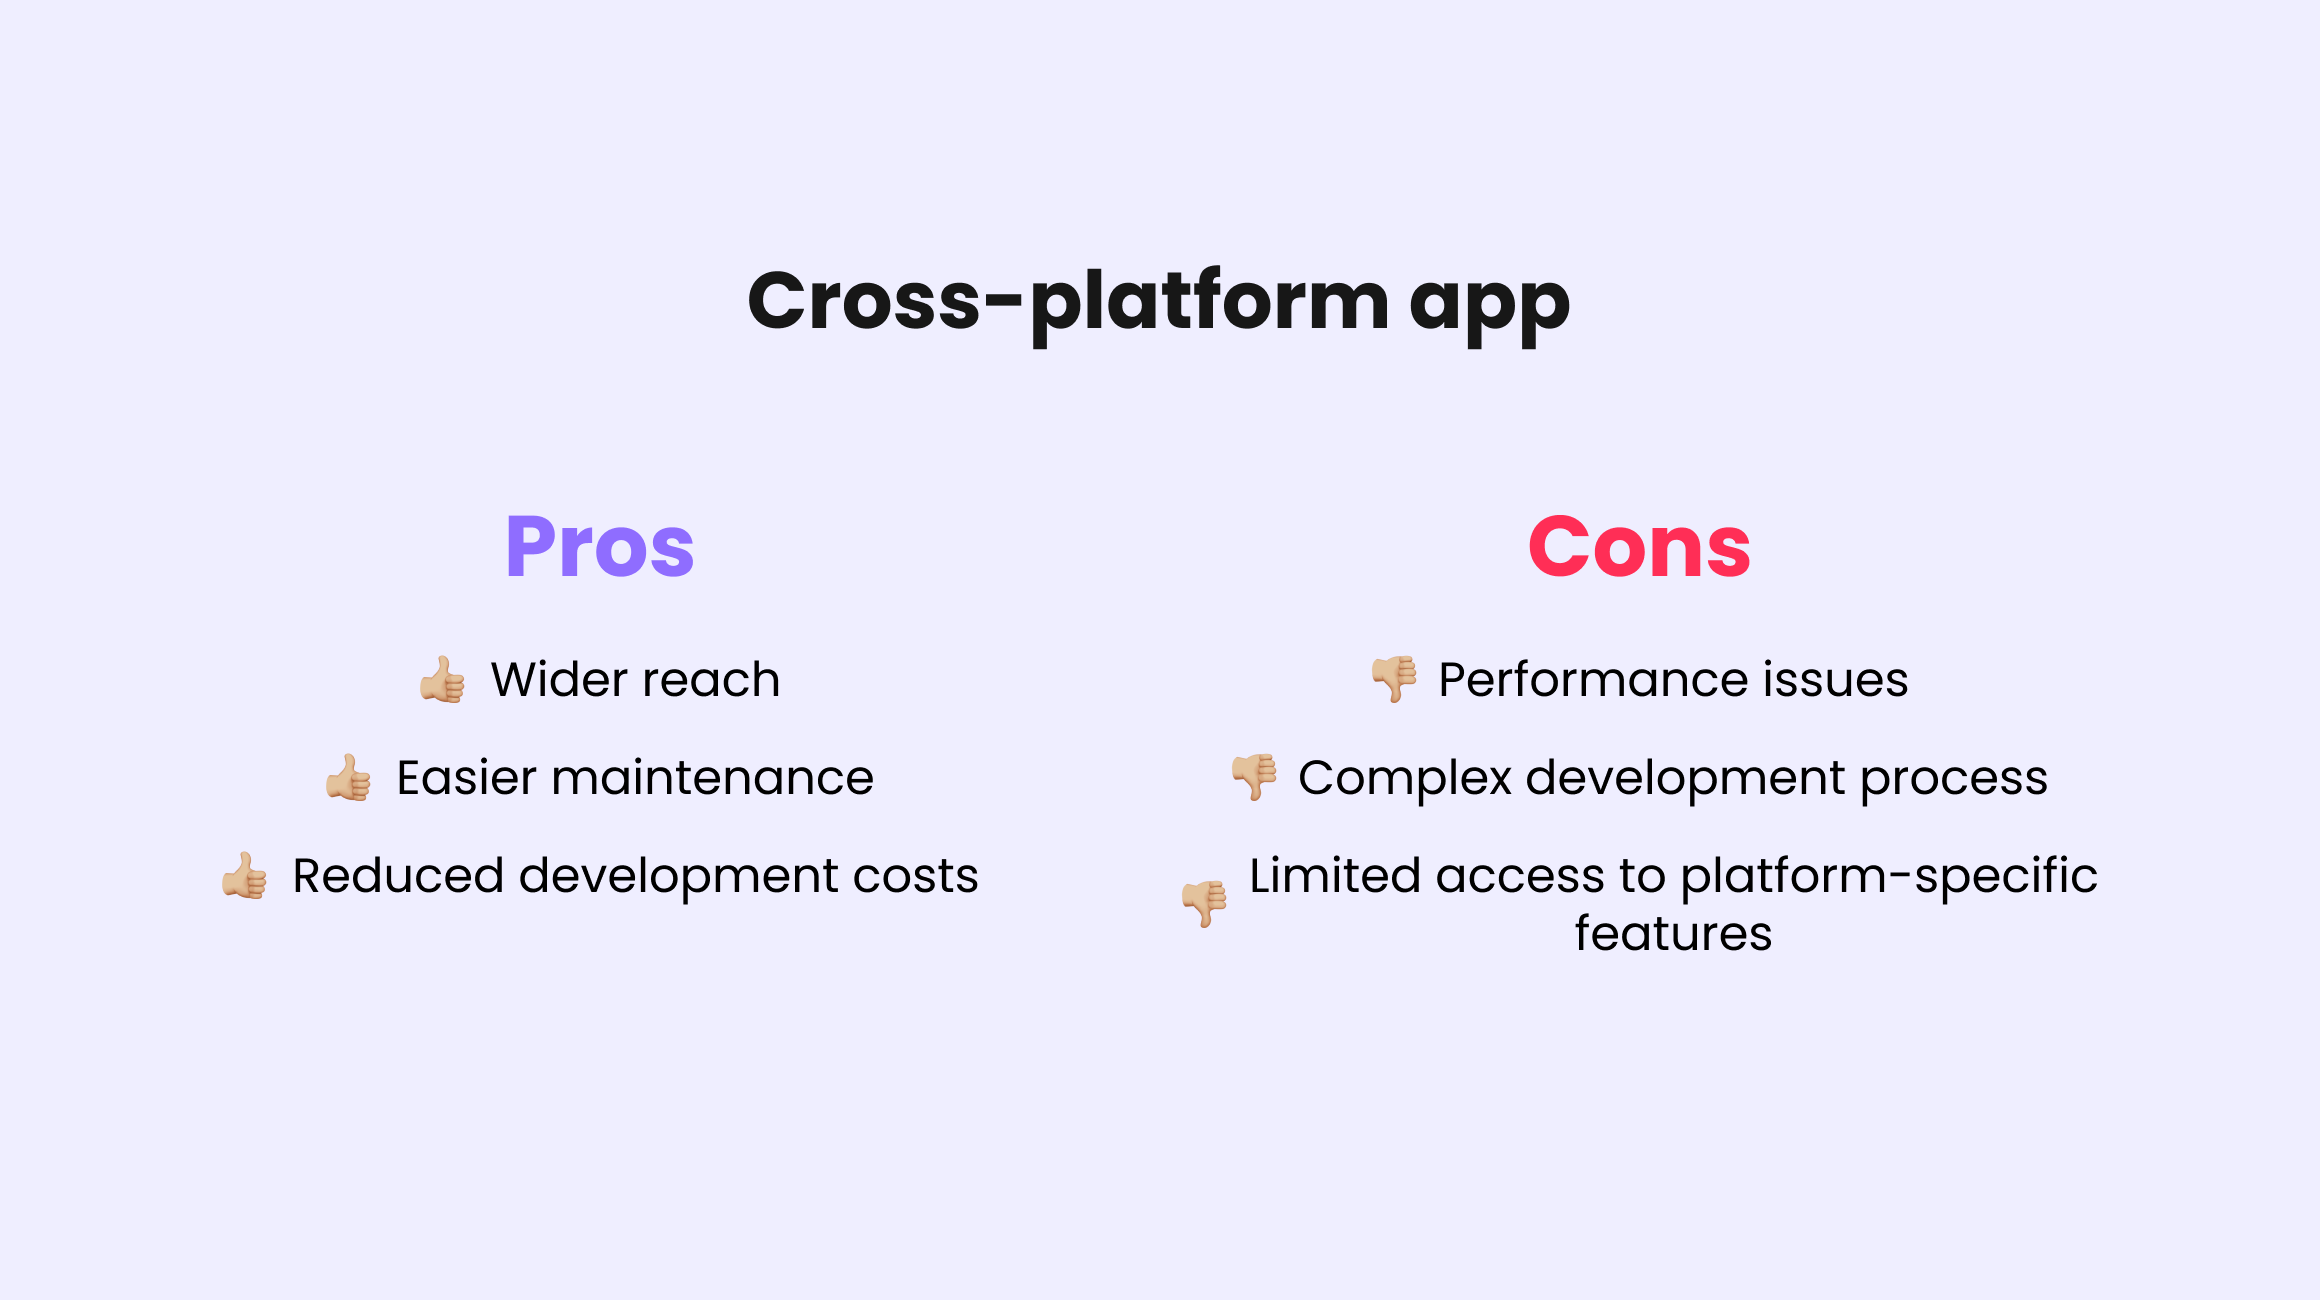 Cross-platform app pros and cons